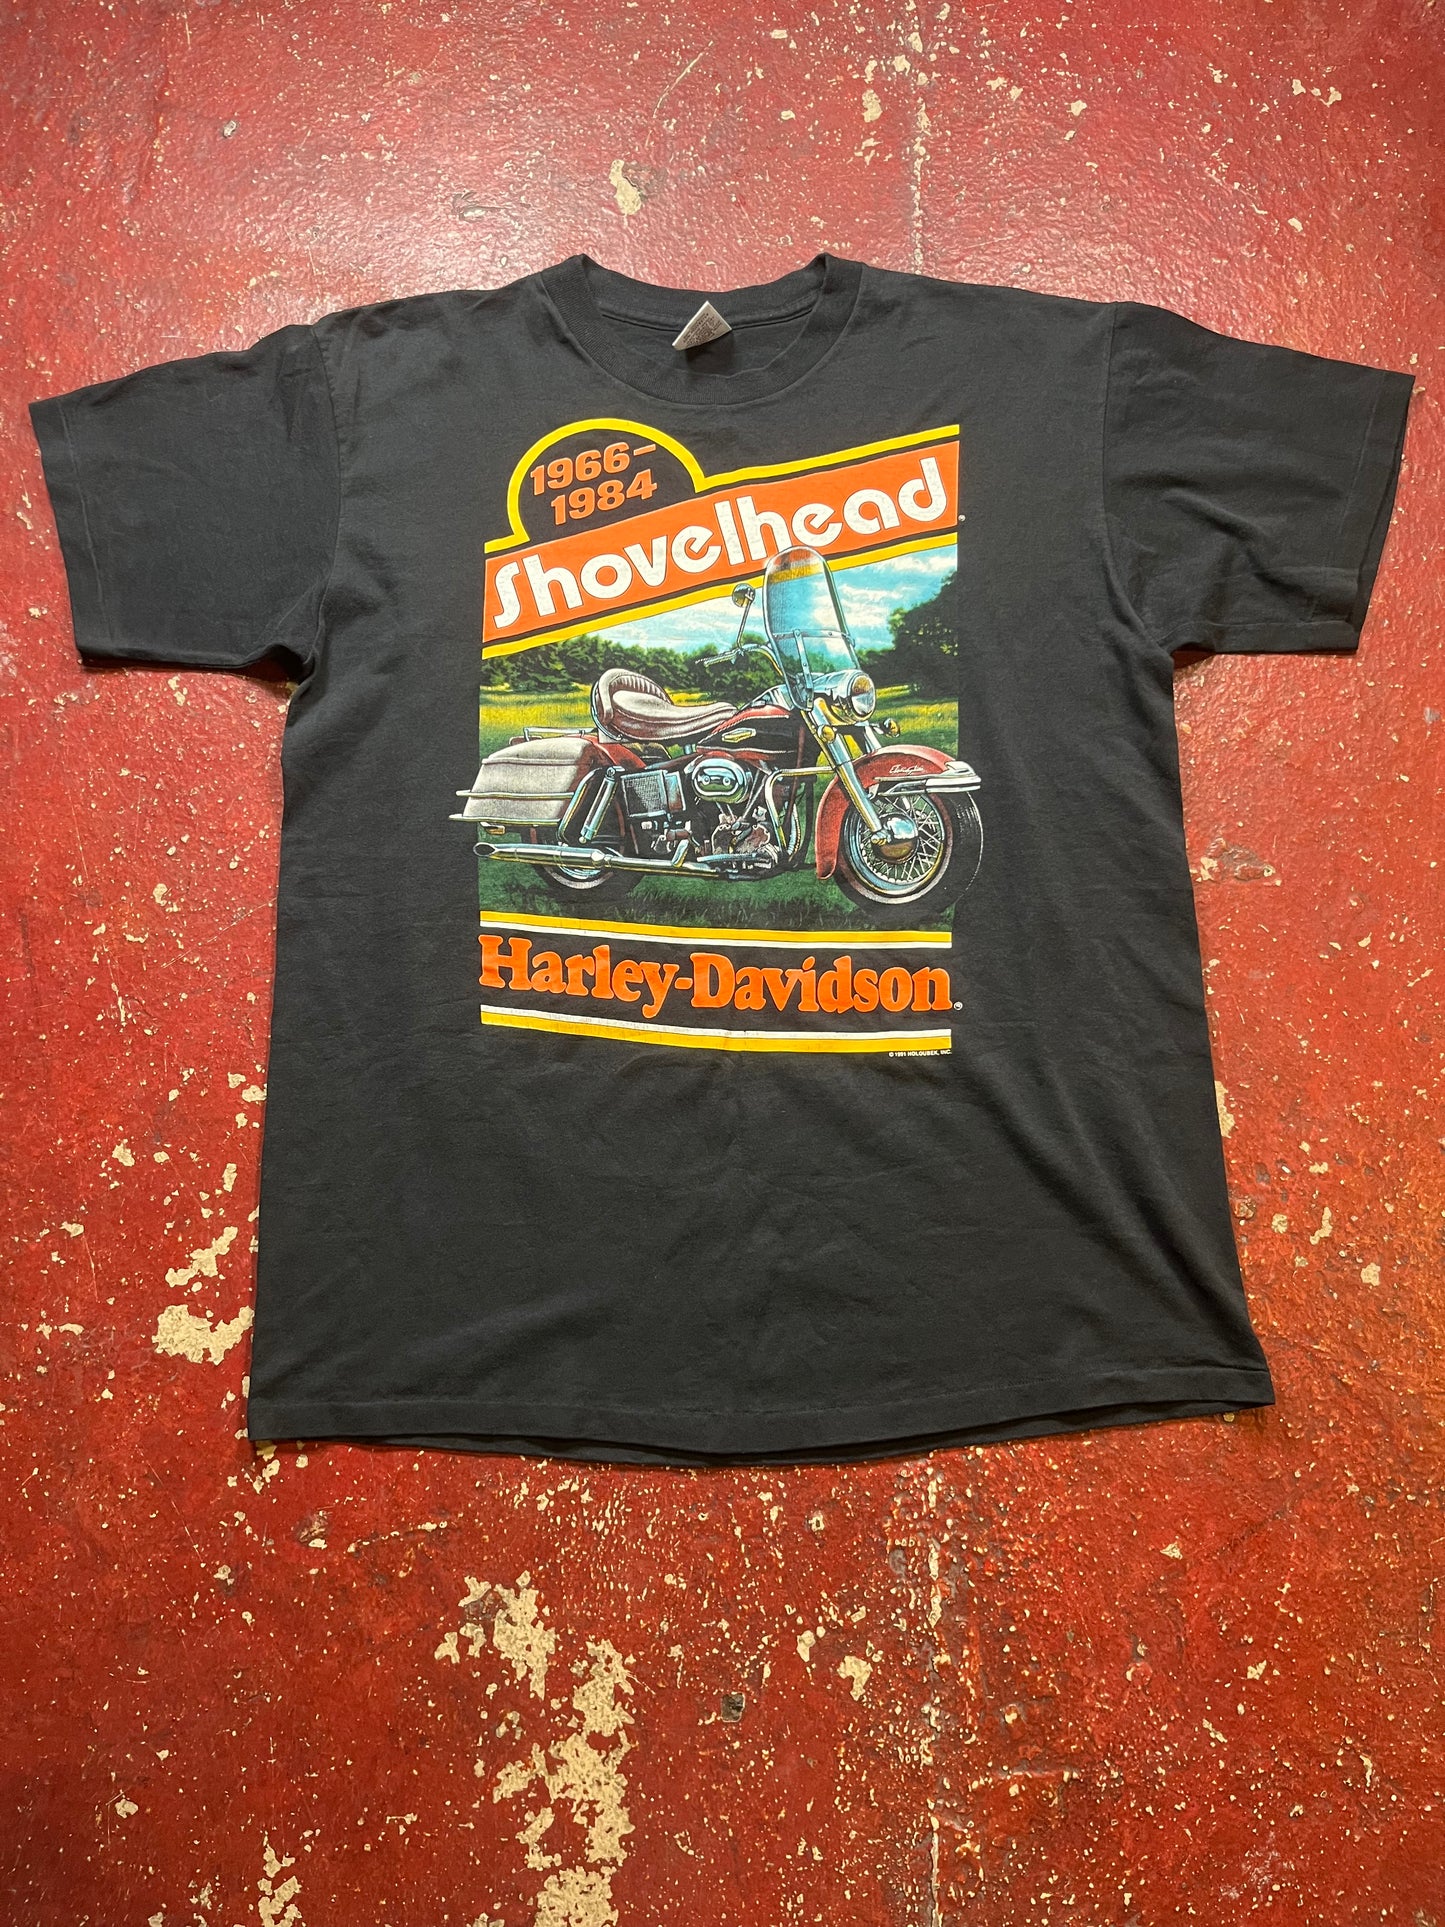 1991 Harley Davidson “Shovelhead” Tee